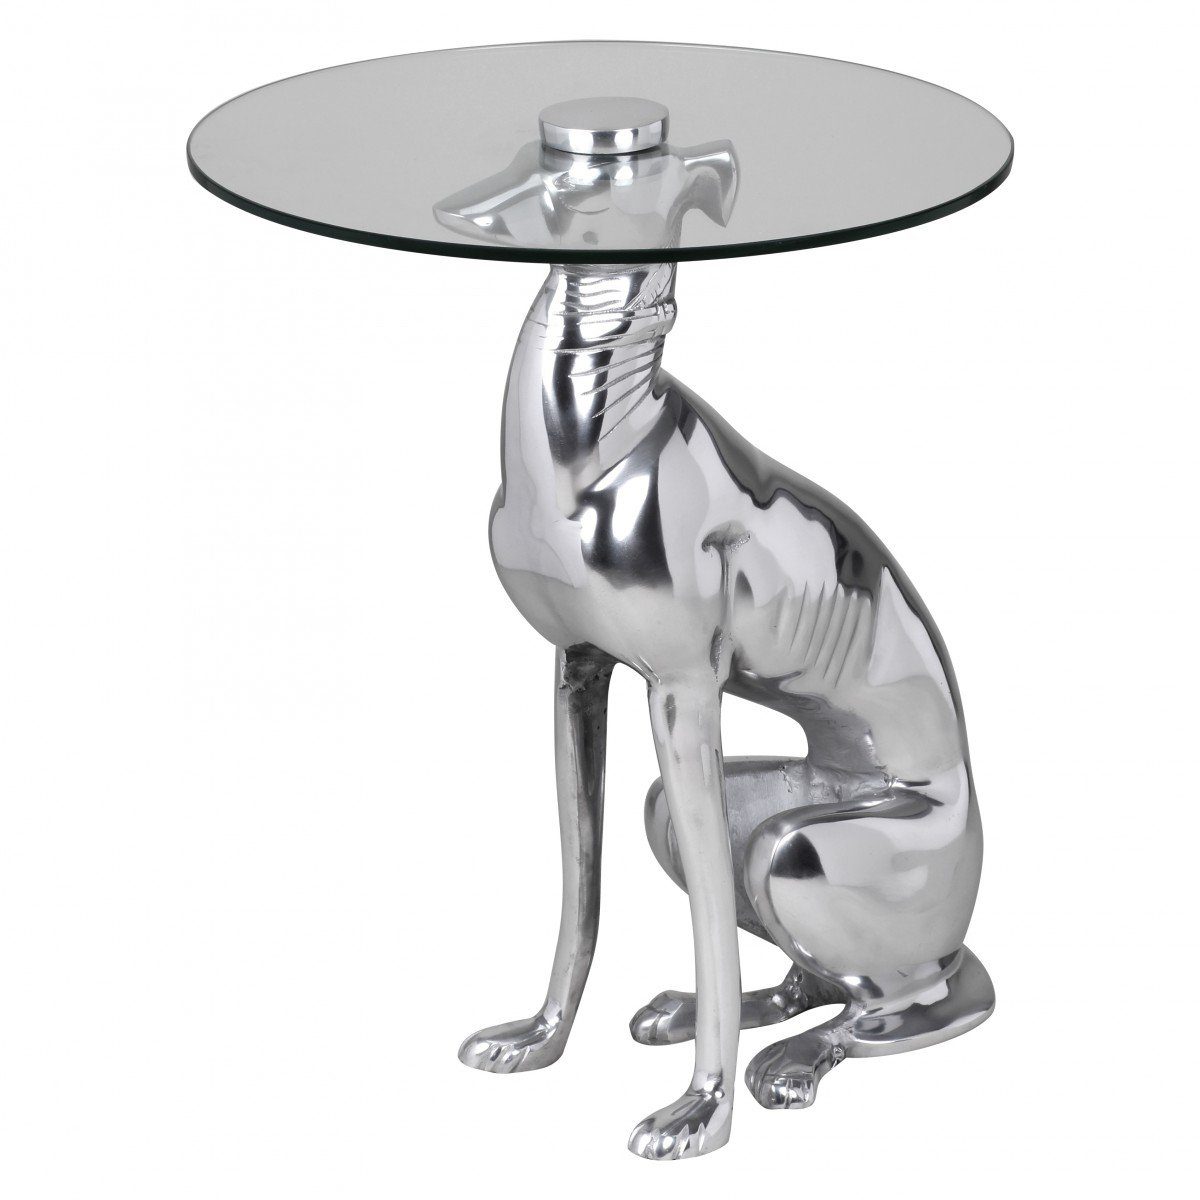 Beistelltisch Wohnling Aluminium Design Farbe aus Figur DOG Beistelltisch Deko